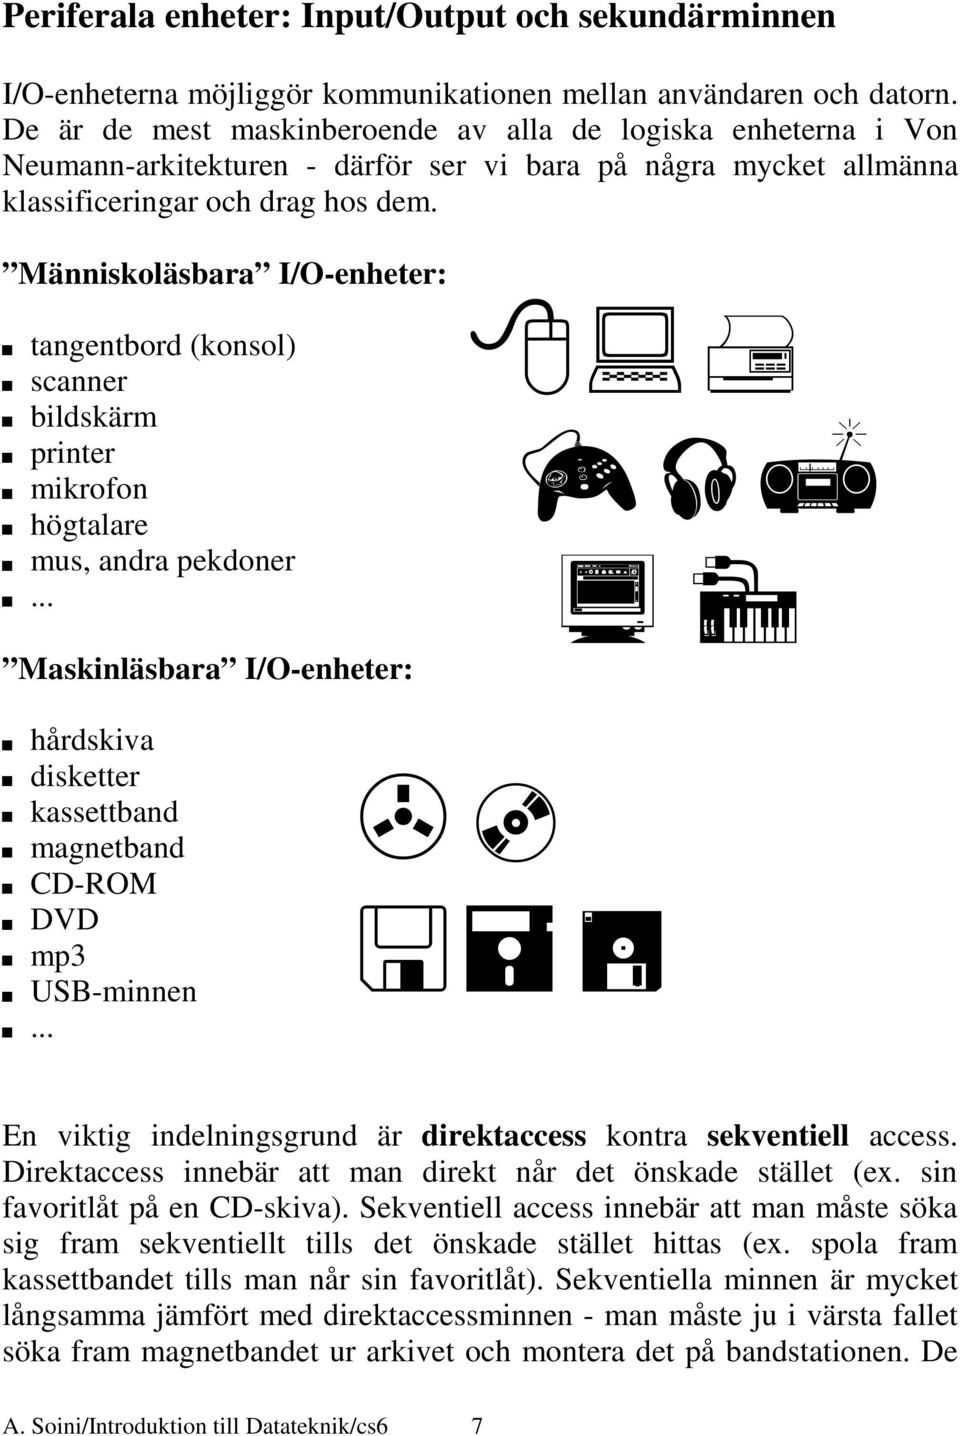 Människoläsbara I/O-enheter: tangentbord (konsol) scanner bildskärm printer mikrofon högtalare mus, andra pekdoner Maskinläsbara I/O-enheter: hårdskiva disketter kassettband magnetband CD-ROM DVD mp3